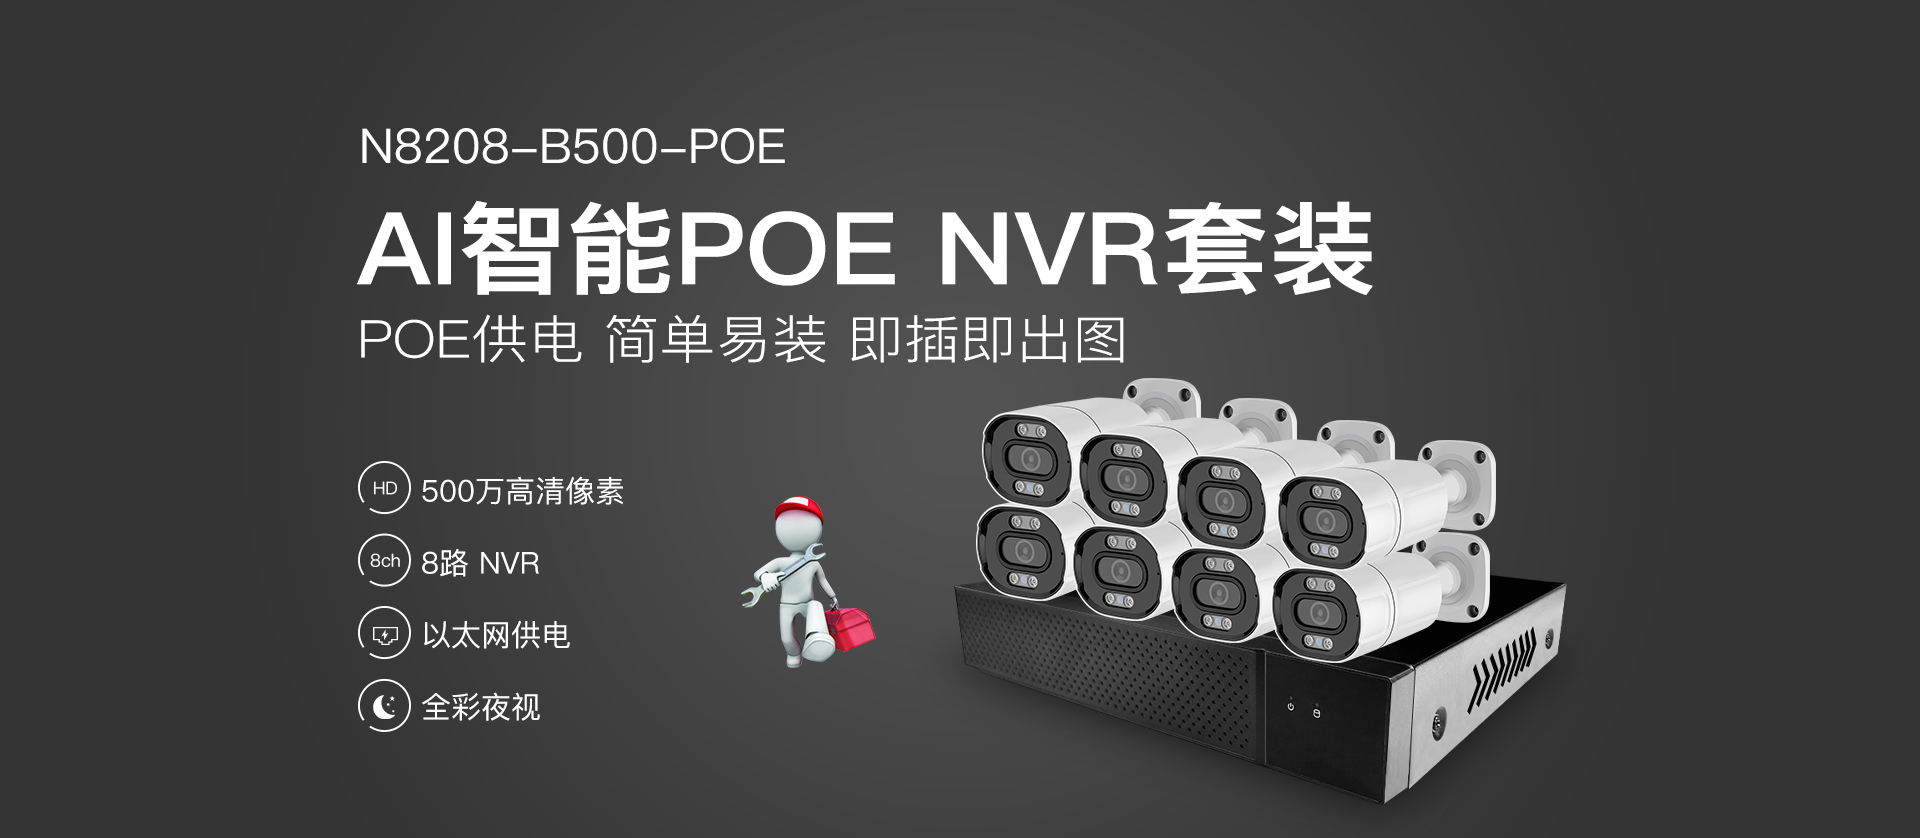 N8208-B500-POE插图